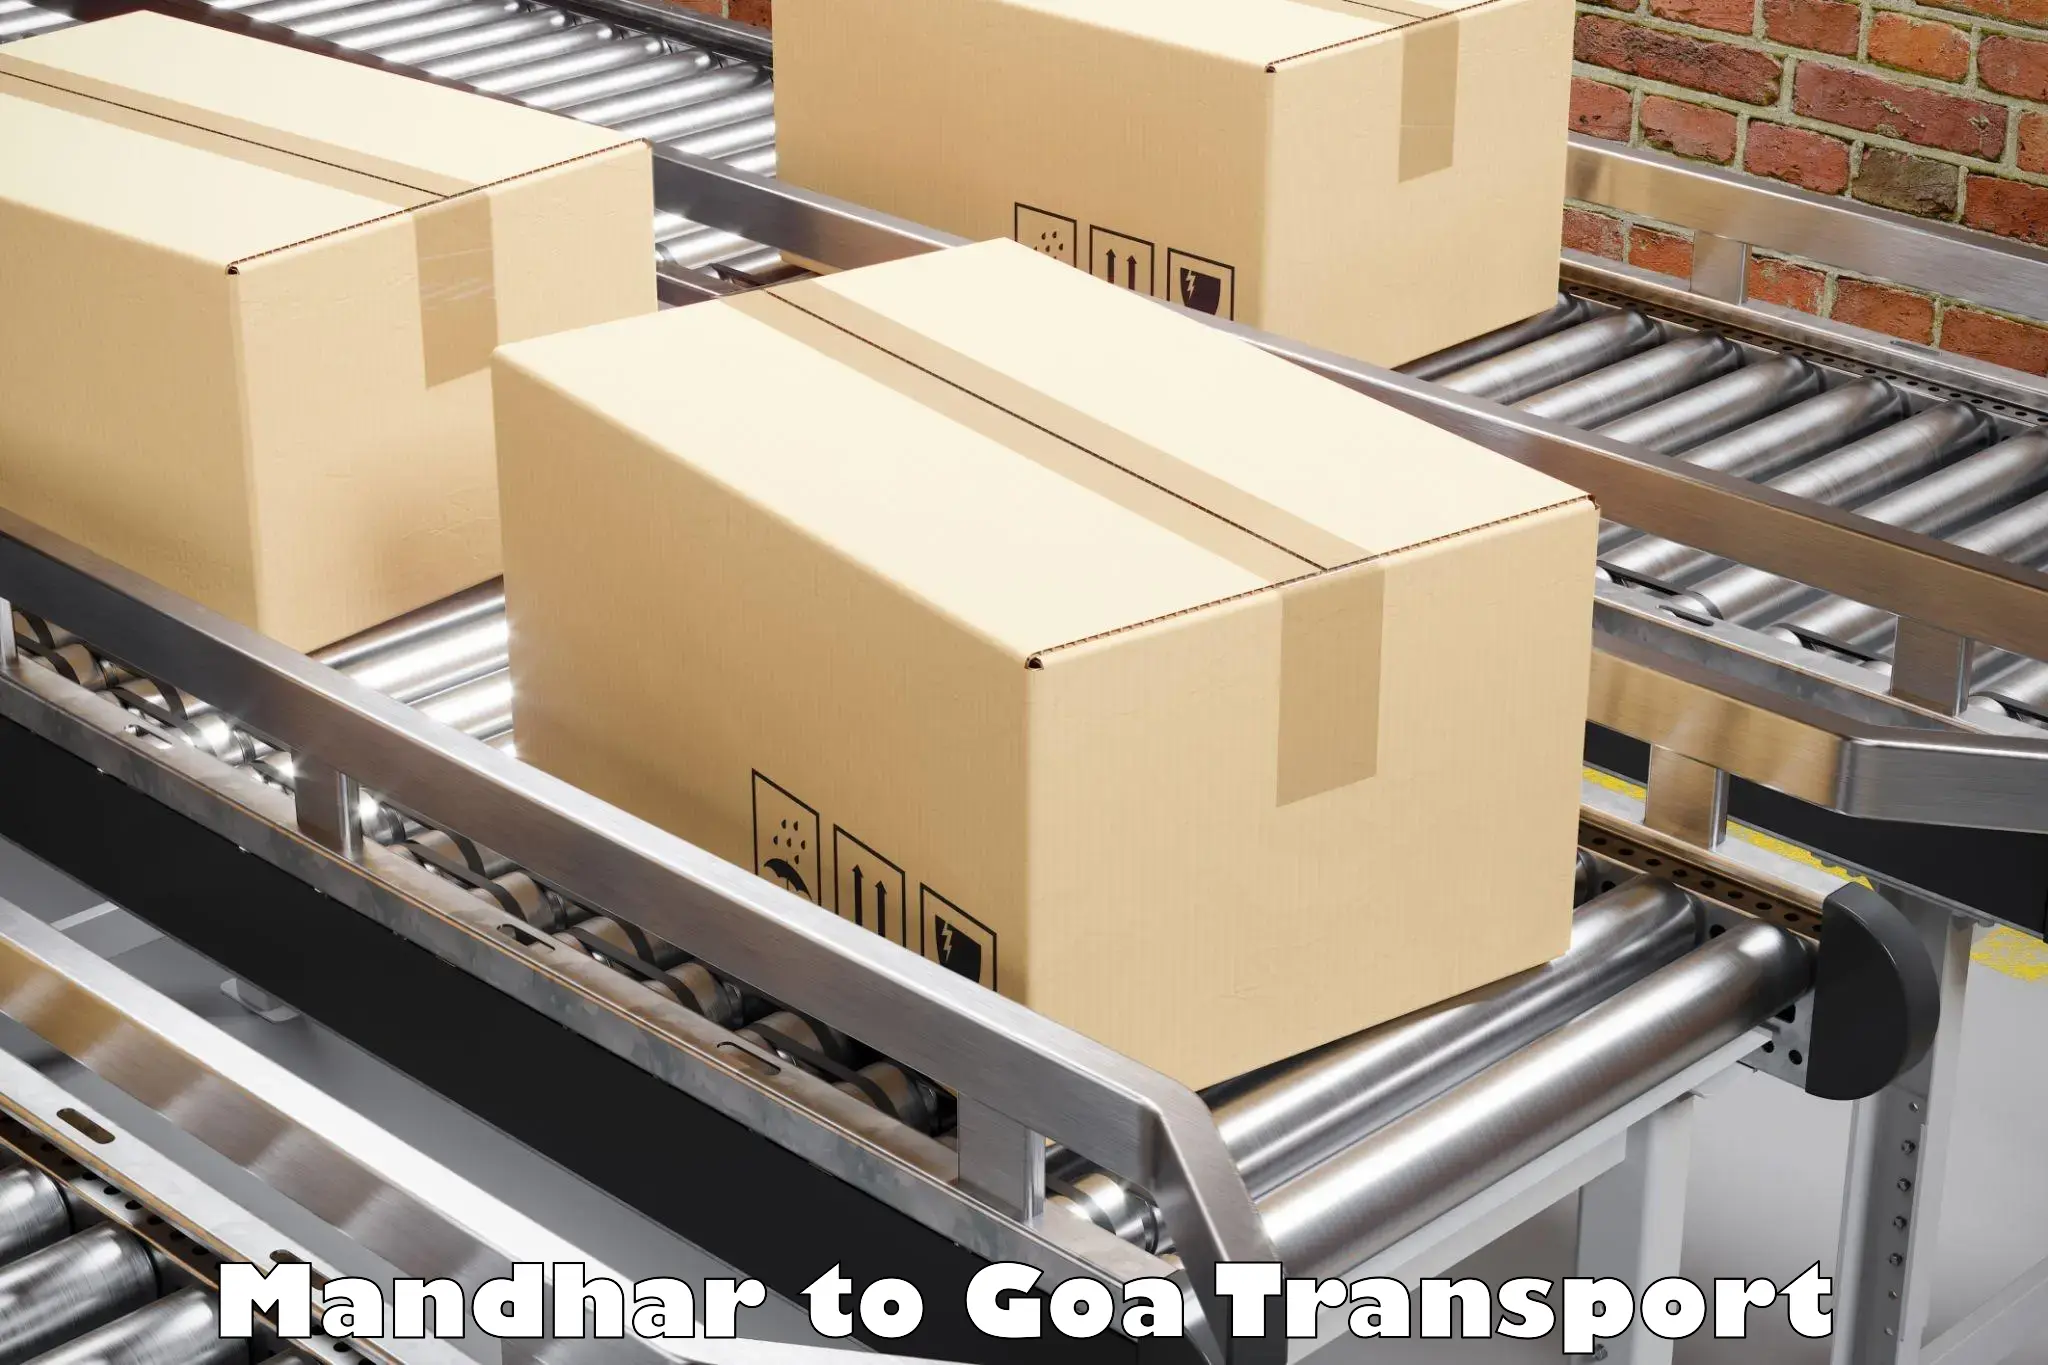 Air cargo transport services Mandhar to South Goa